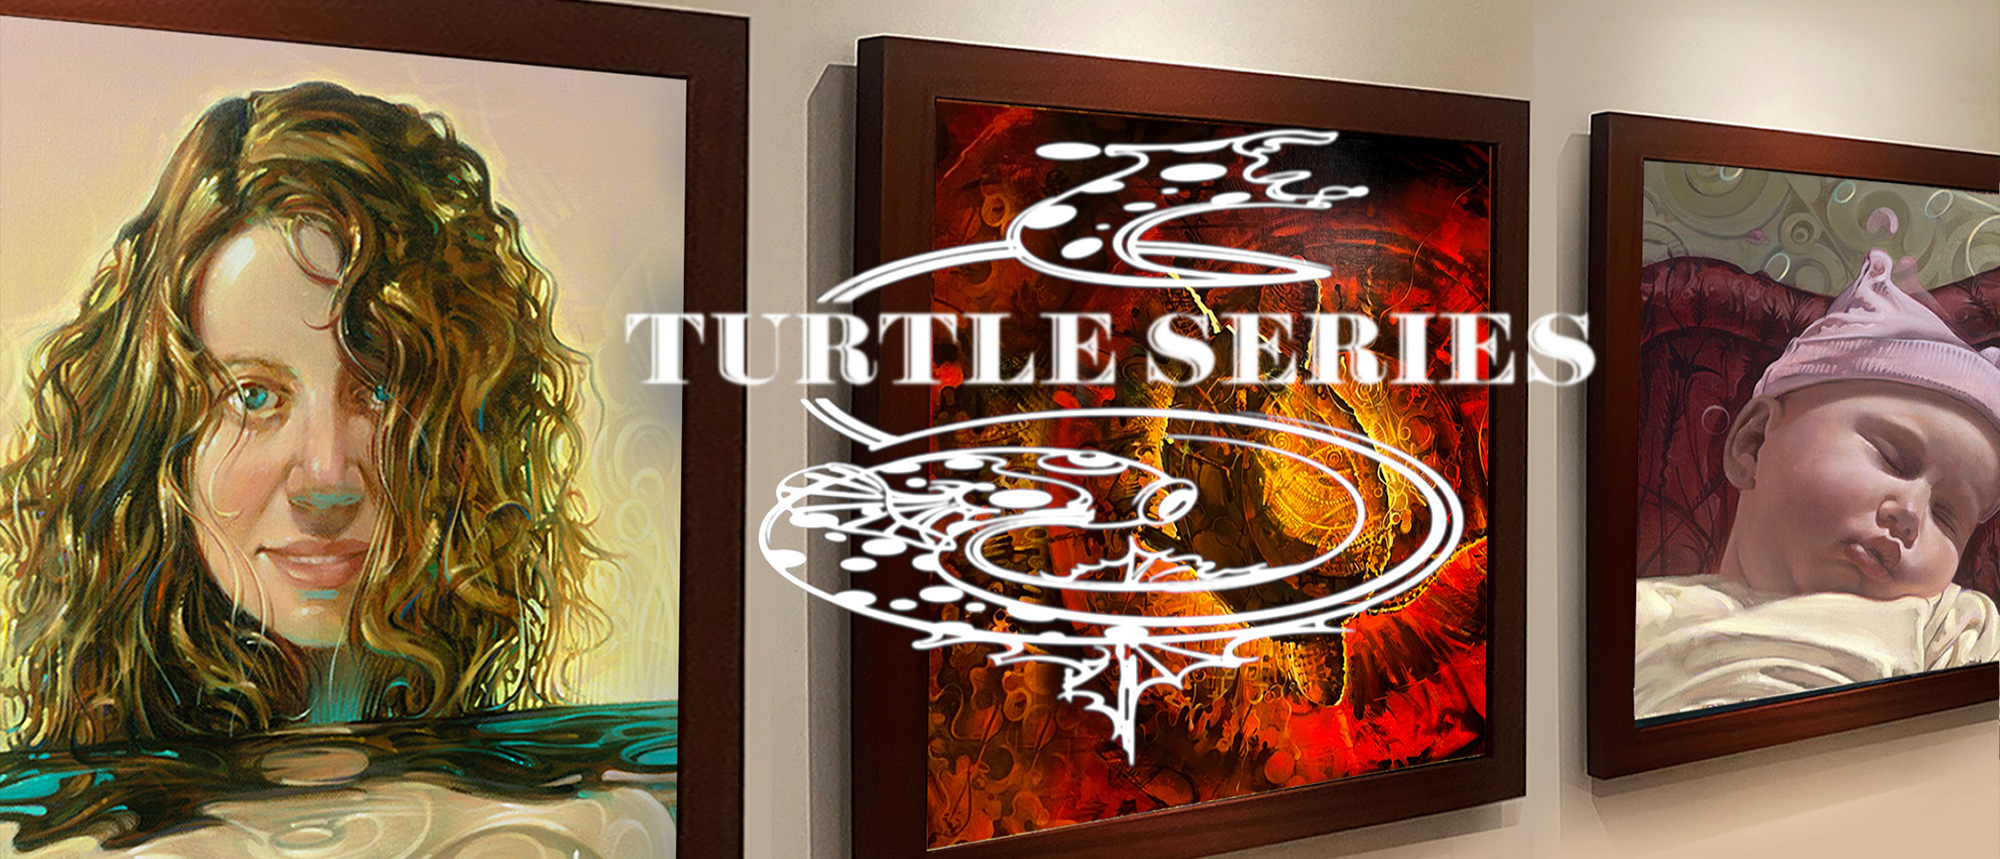 Turtle Series